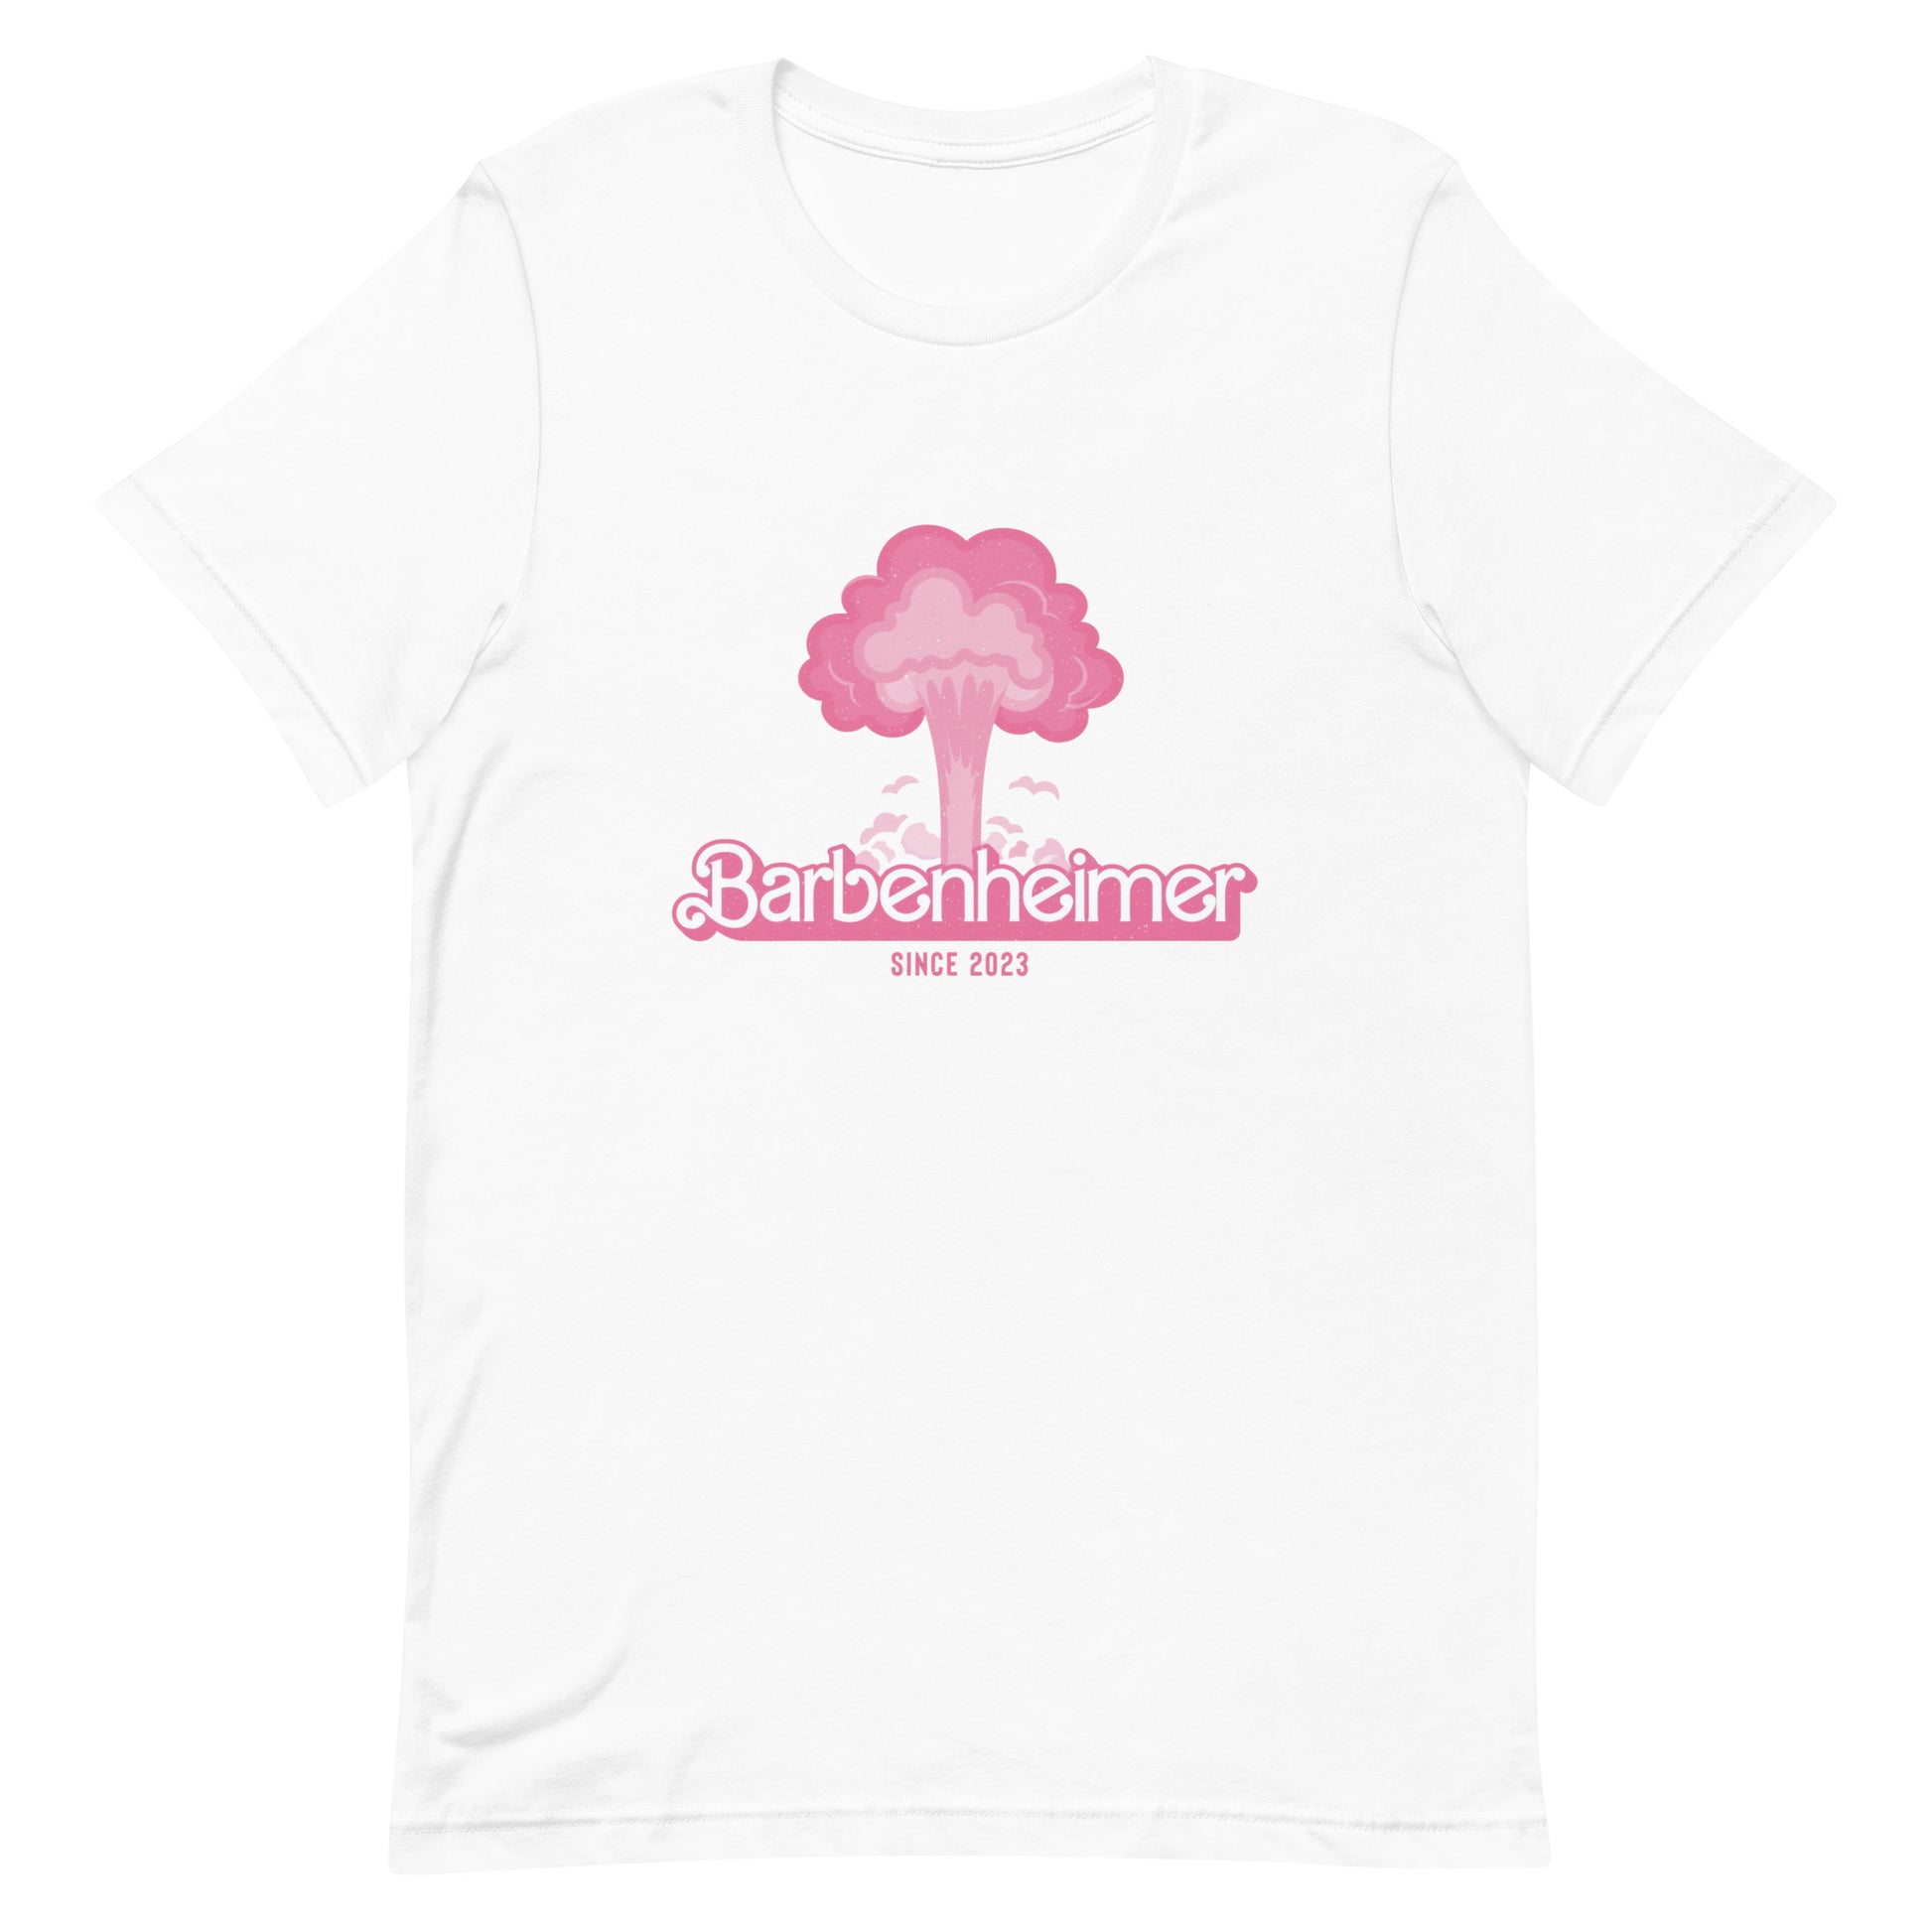 ¡Compra el mejor merchandising en Superstar! Encuentra diseños únicos y de alta calidad en camisetas únicas, Camisa Bearbenheimer Bomb.